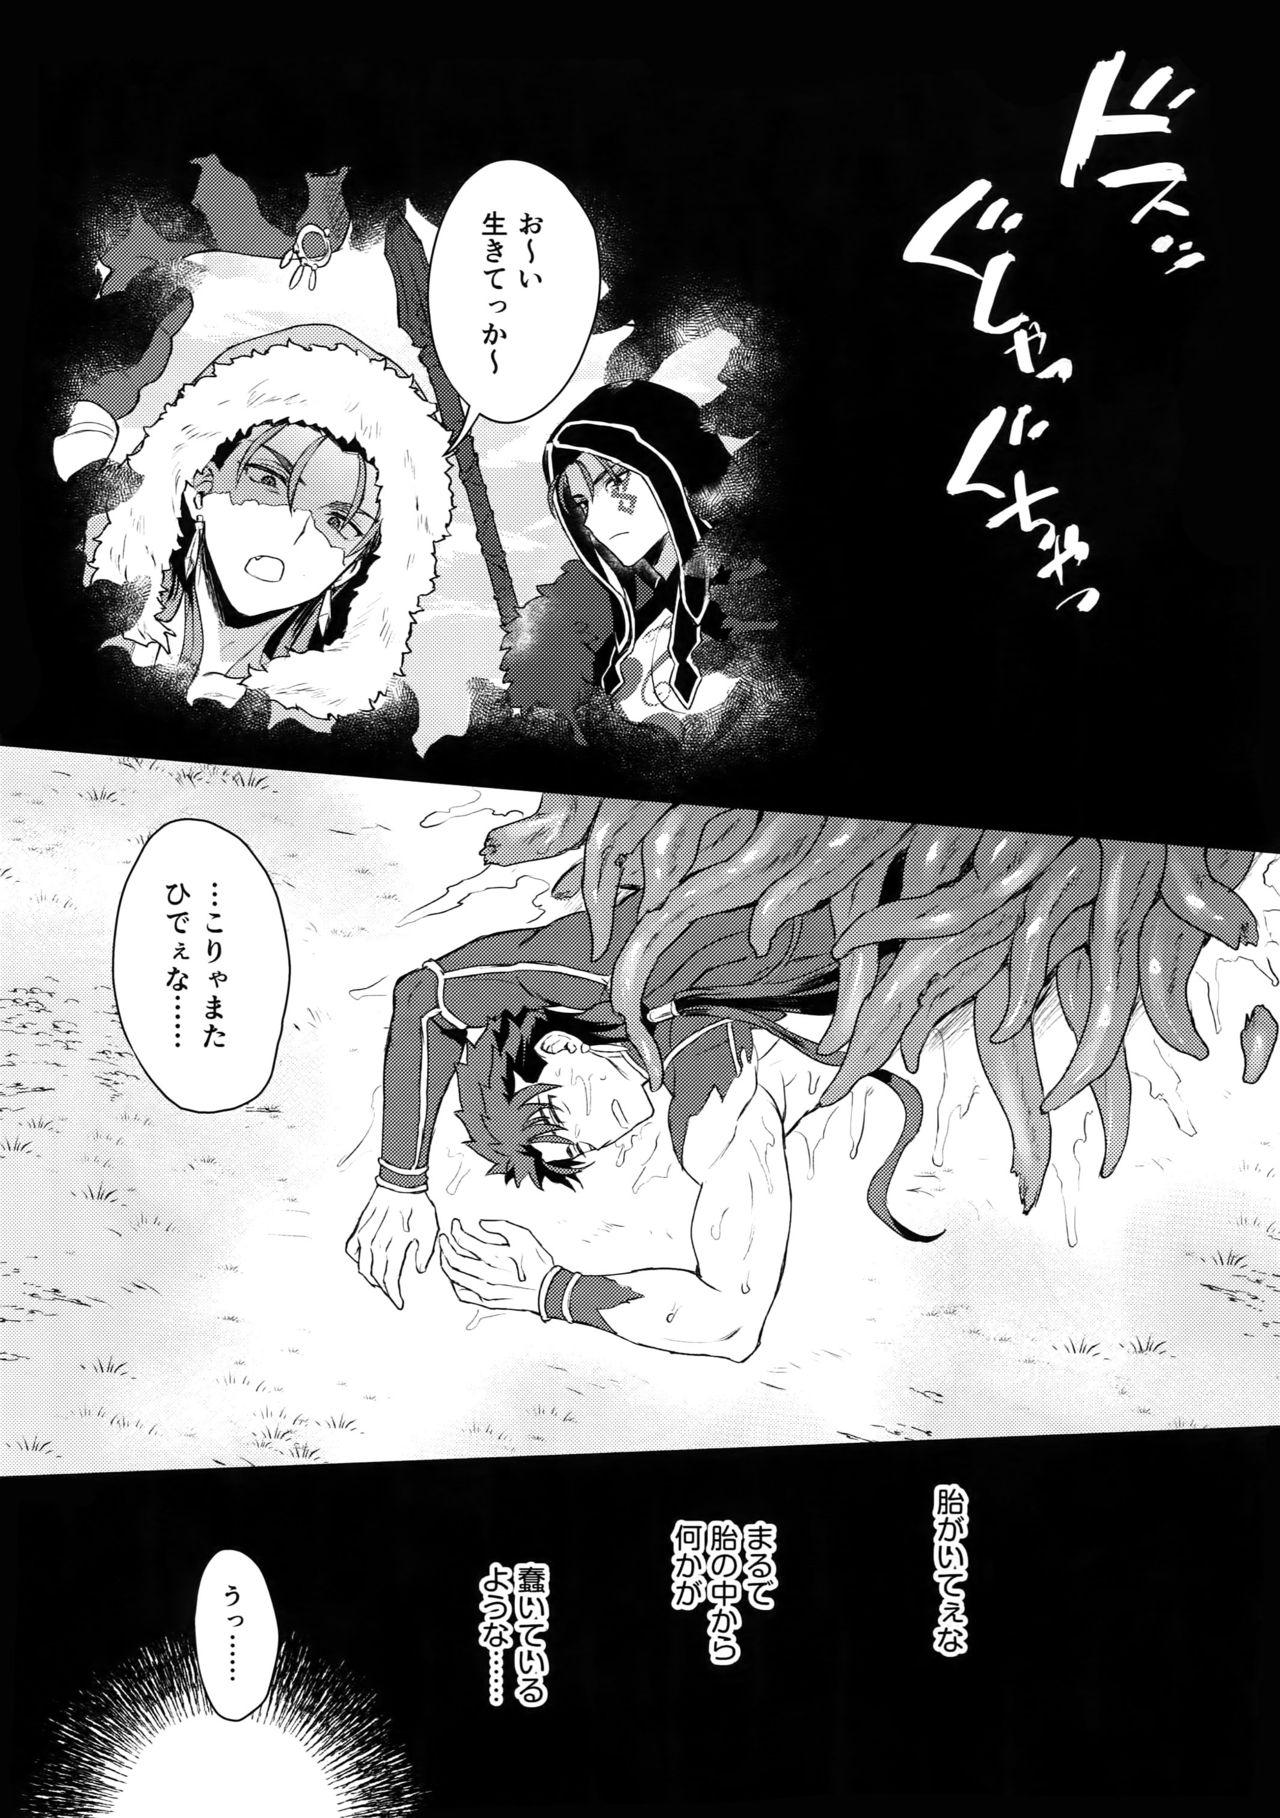 Ballbusting α no Lancer ga Muriyari-tsu Ω ni sa Rete Hidoi me ni au Hanashi - Fate grand order Juggs - Page 8